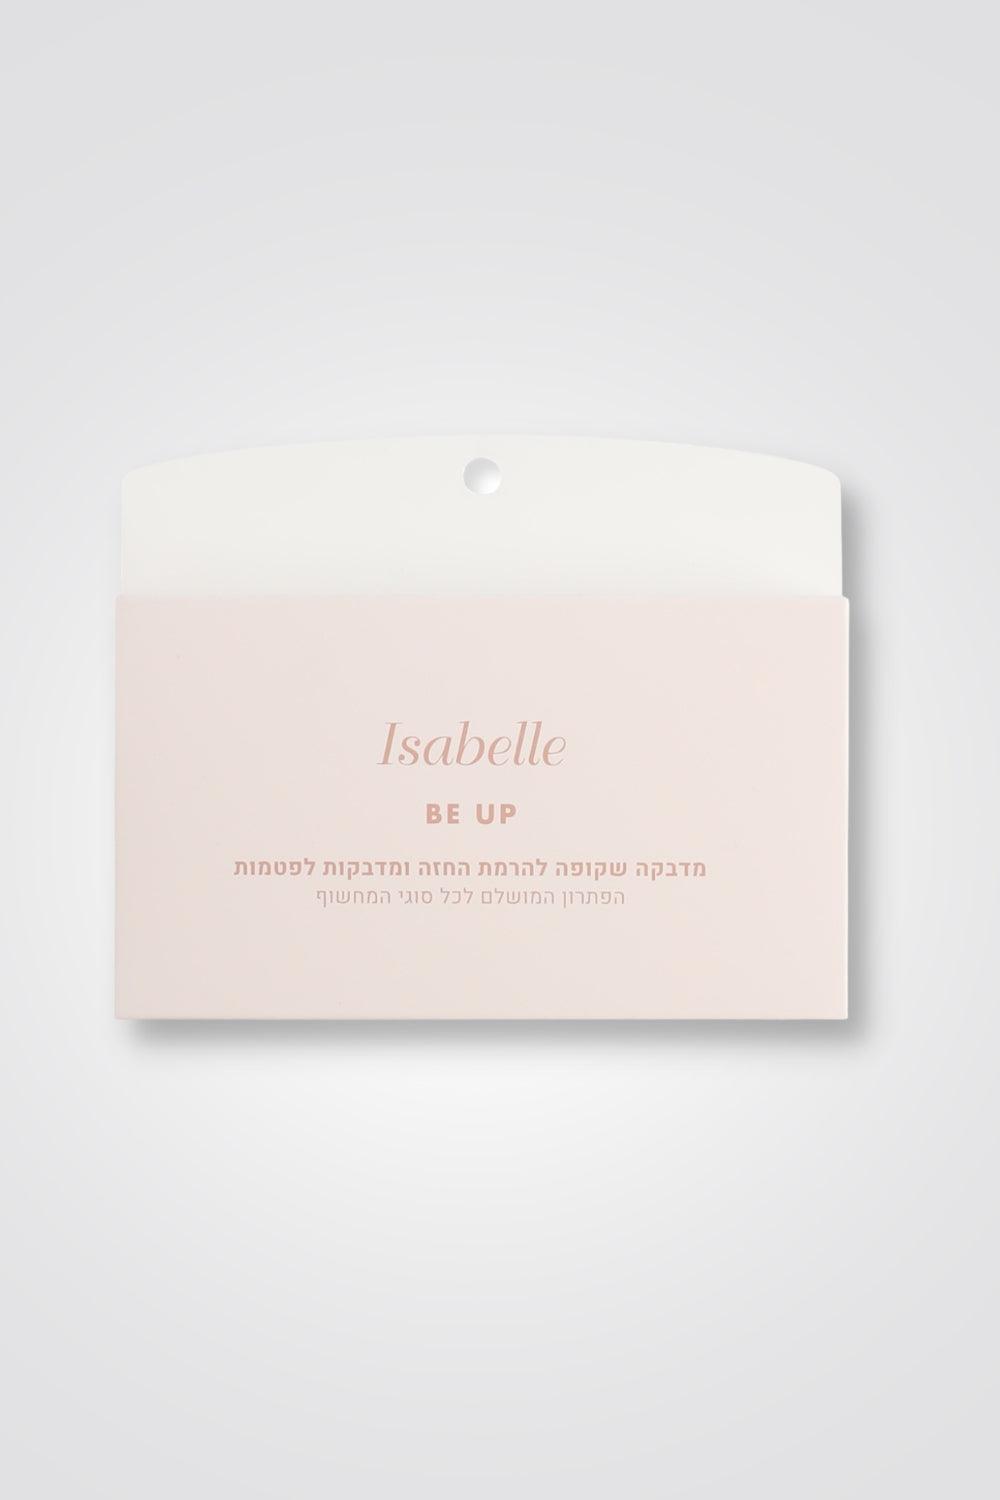 Isabelle - BE UP מארז מדבקות שקופות להרמת החזה ומדבקות לפטמות - MASHBIR//365